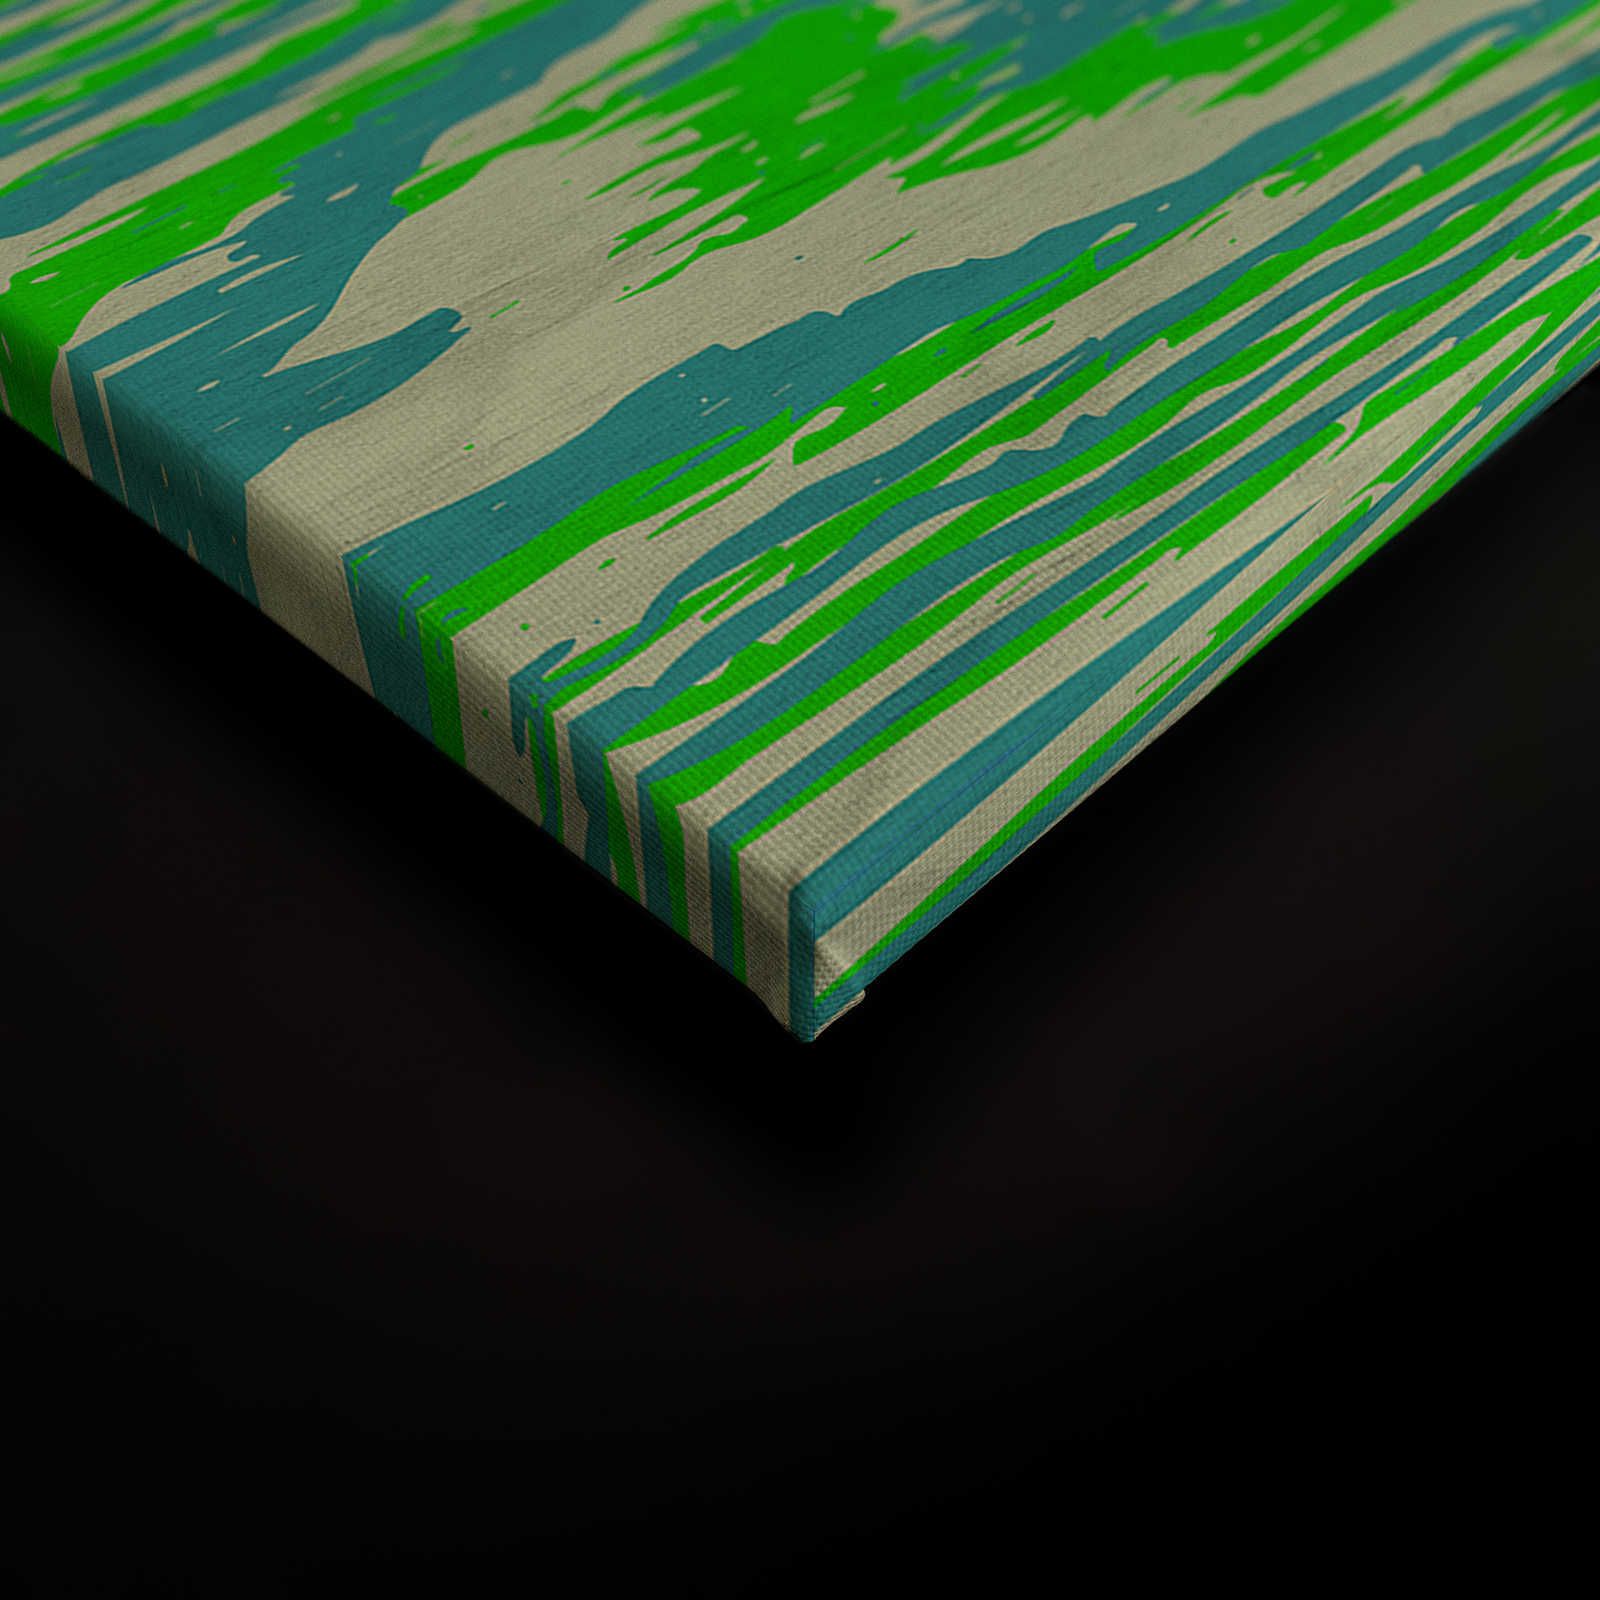             Bounty 1 - Pittura su tela verde neon con effetto legno - 0,90 m x 0,60 m
        